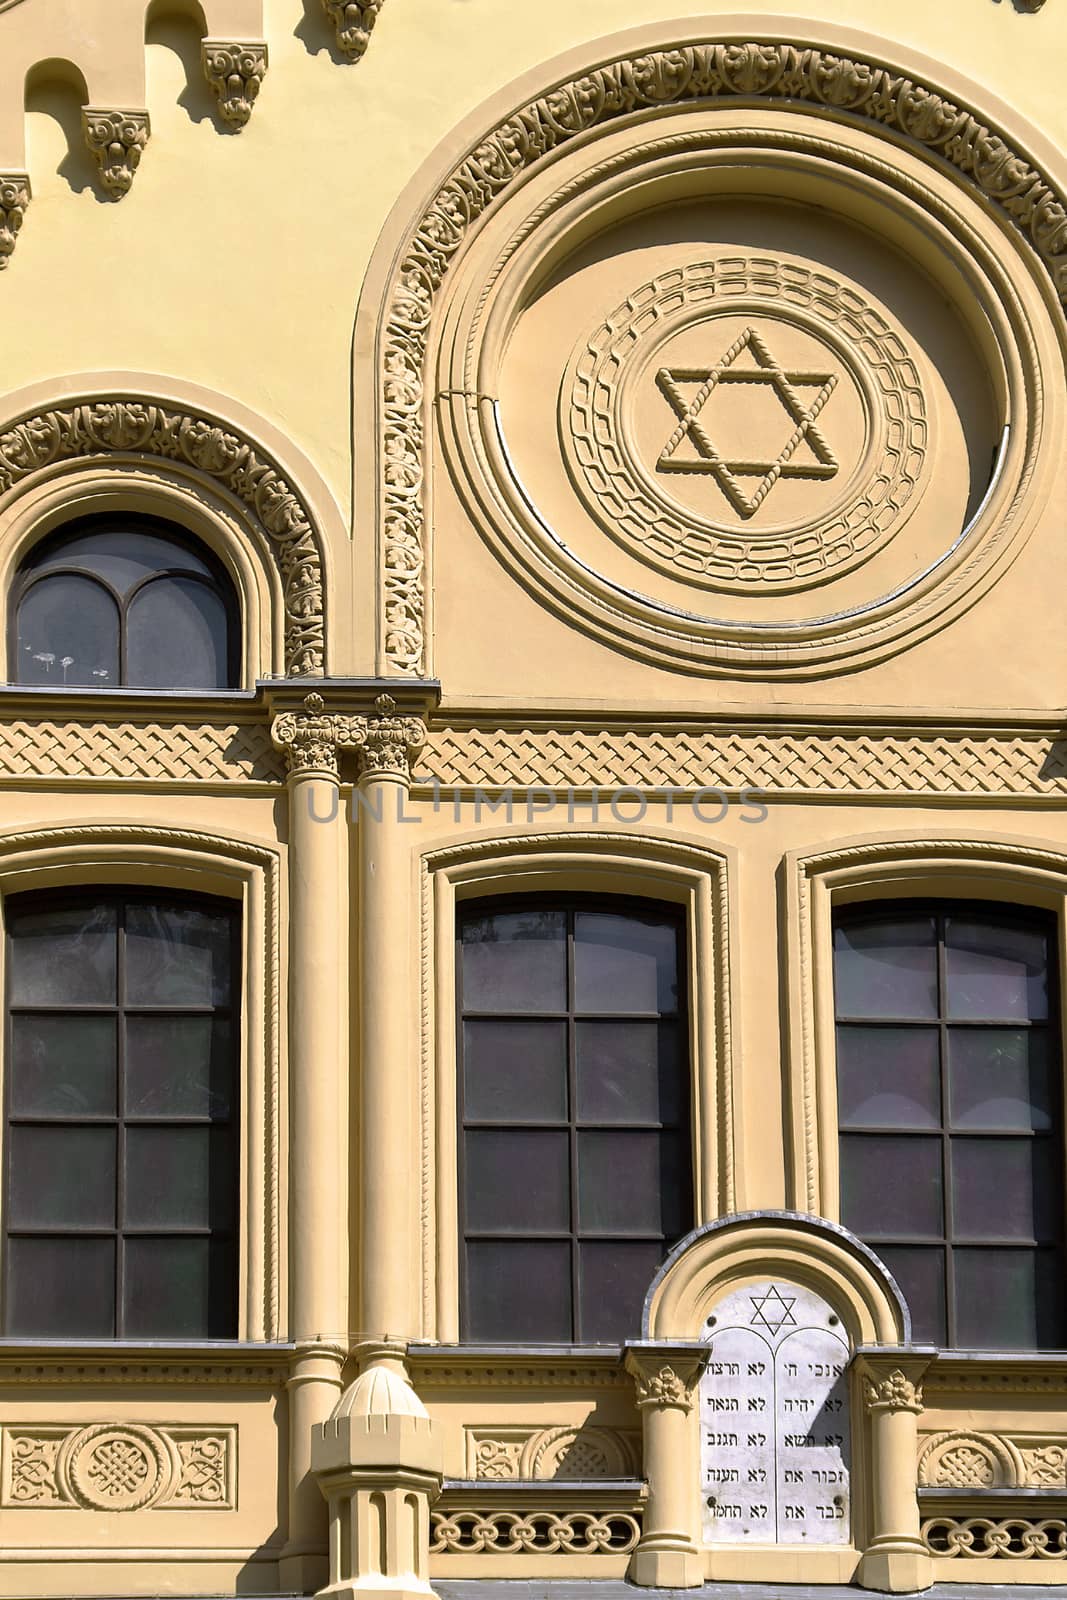 Façade of the Neo-romanesque Rywka and Zalman Nozyk synagogue - Warsaw, Poland.